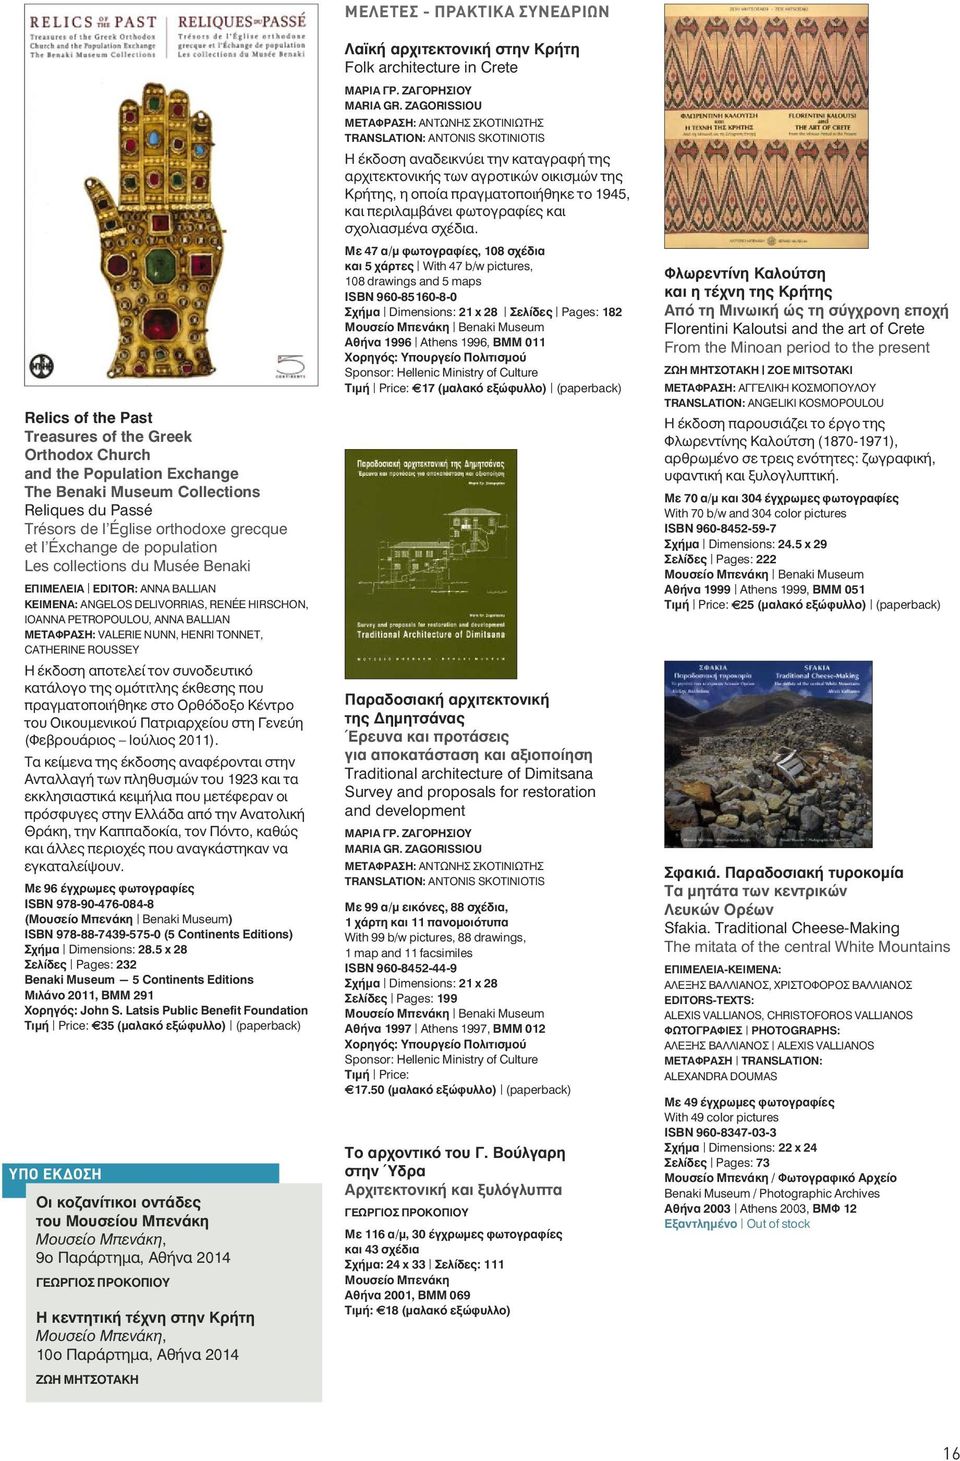 Η έκδοση αποτελεί τον συνοδευτικό κατάλογο της ομότιτλης έκθεσης που πραγματοποιήθηκε στο Ορθόδοξο Κέντρο του Οικουμενικού Πατριαρχείου στη Γενεύη (Φεβρουάριος Ιούλιος 2011).